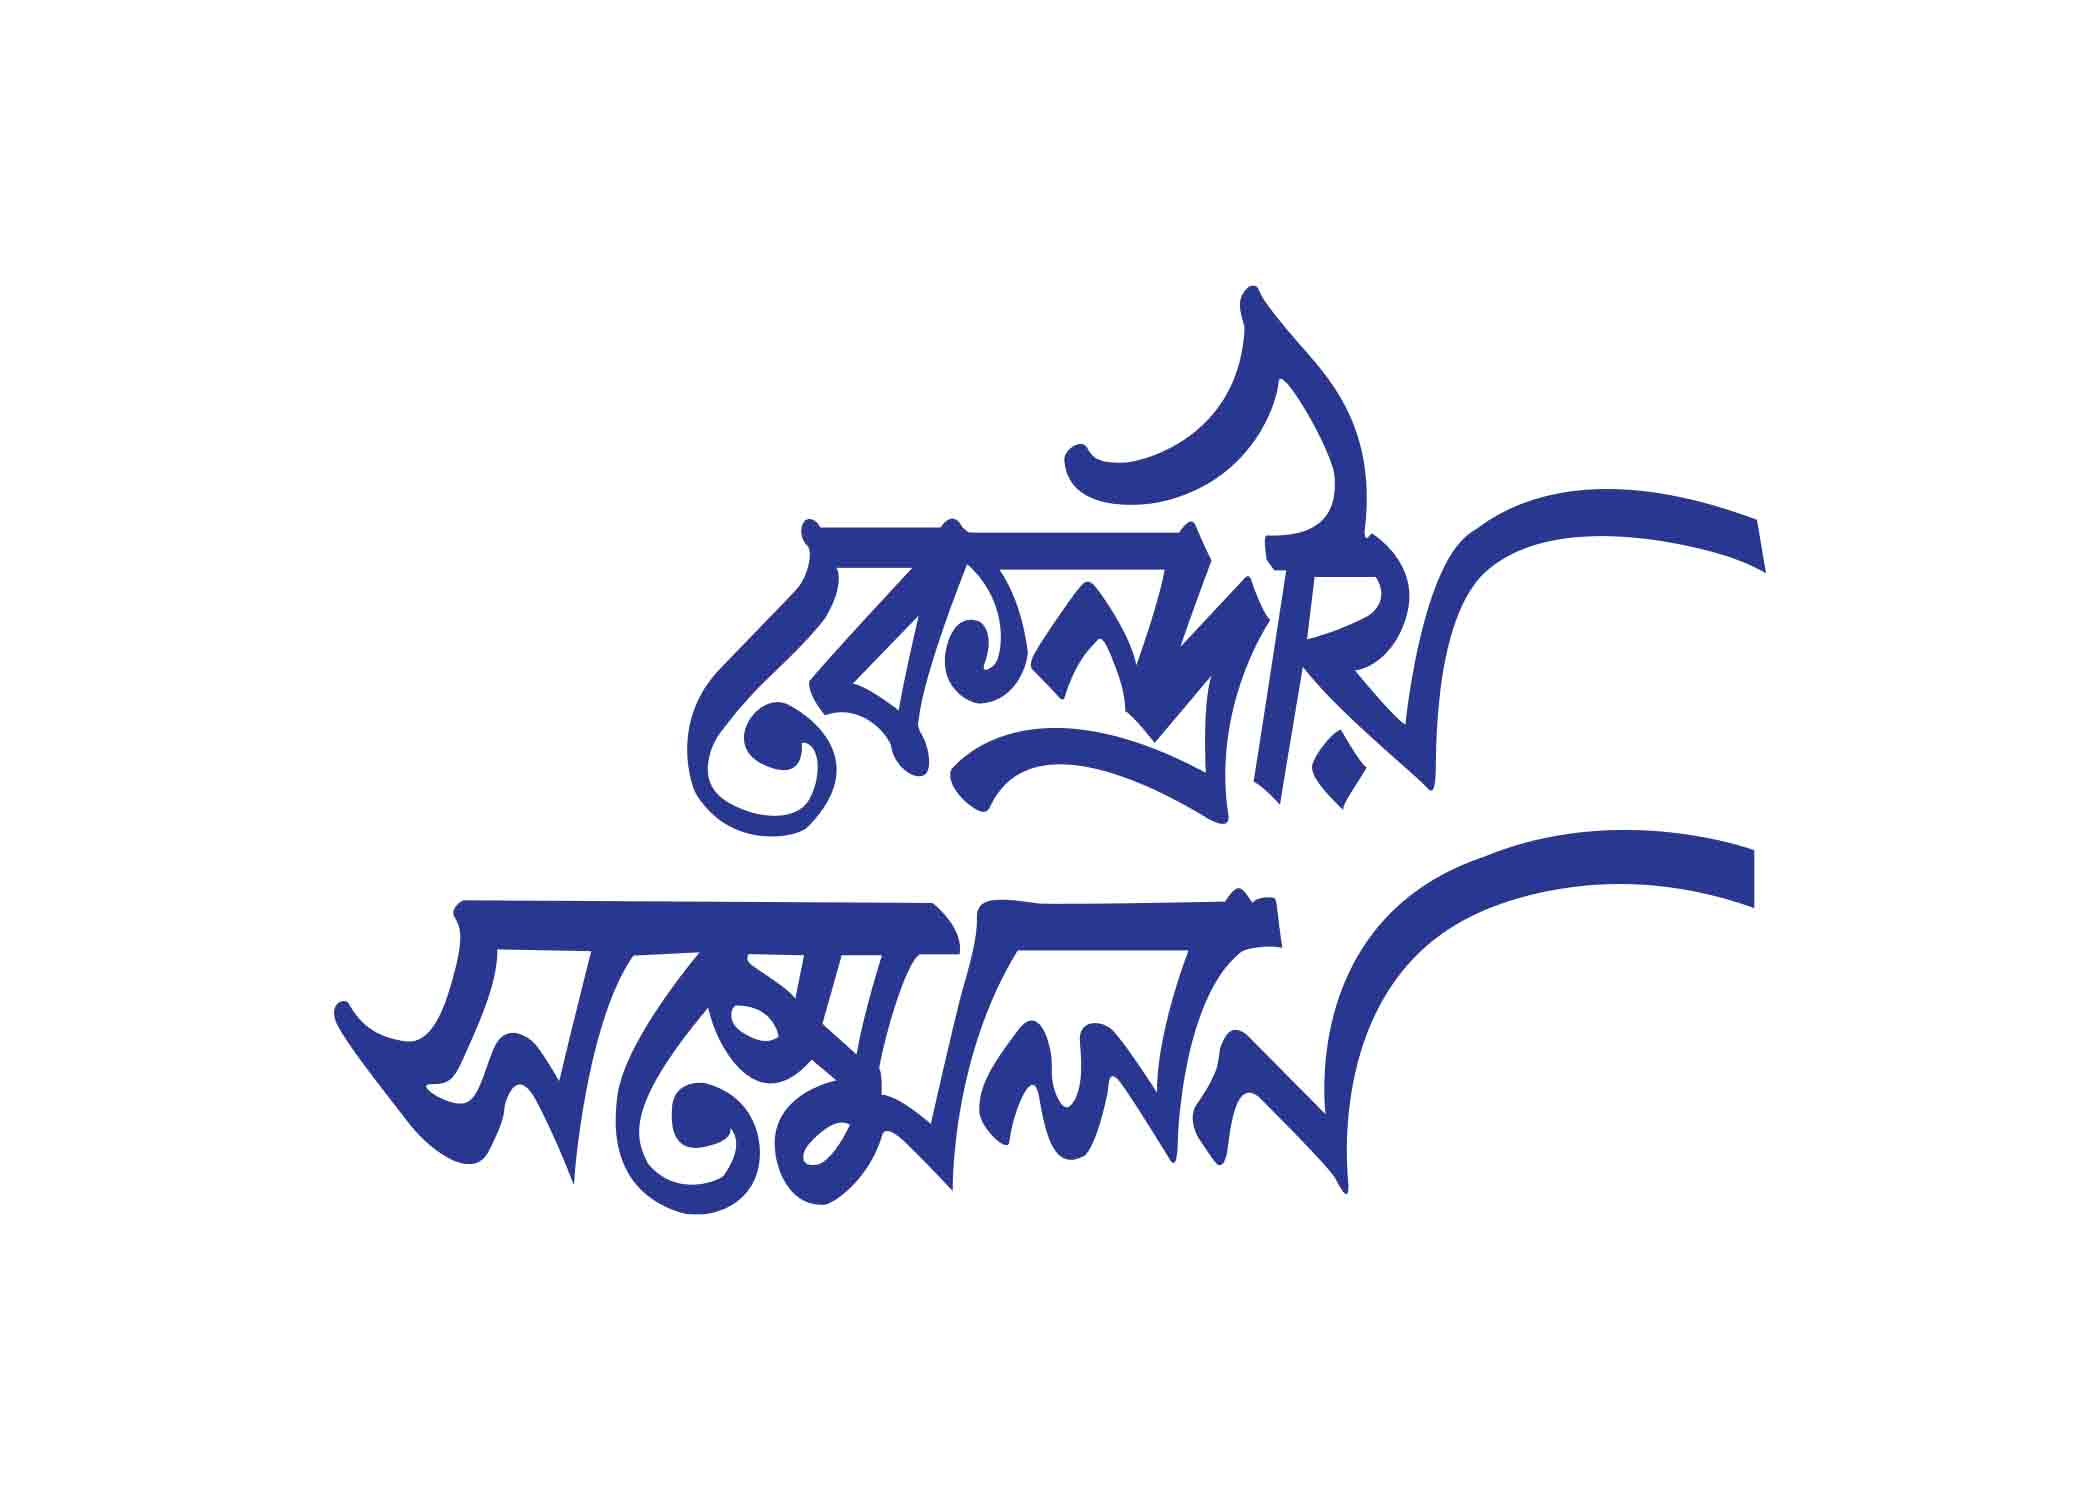 কেন্দ্রীয় সম্মেলন টাইপোগ্রাফি । Bangla Typhography PNG